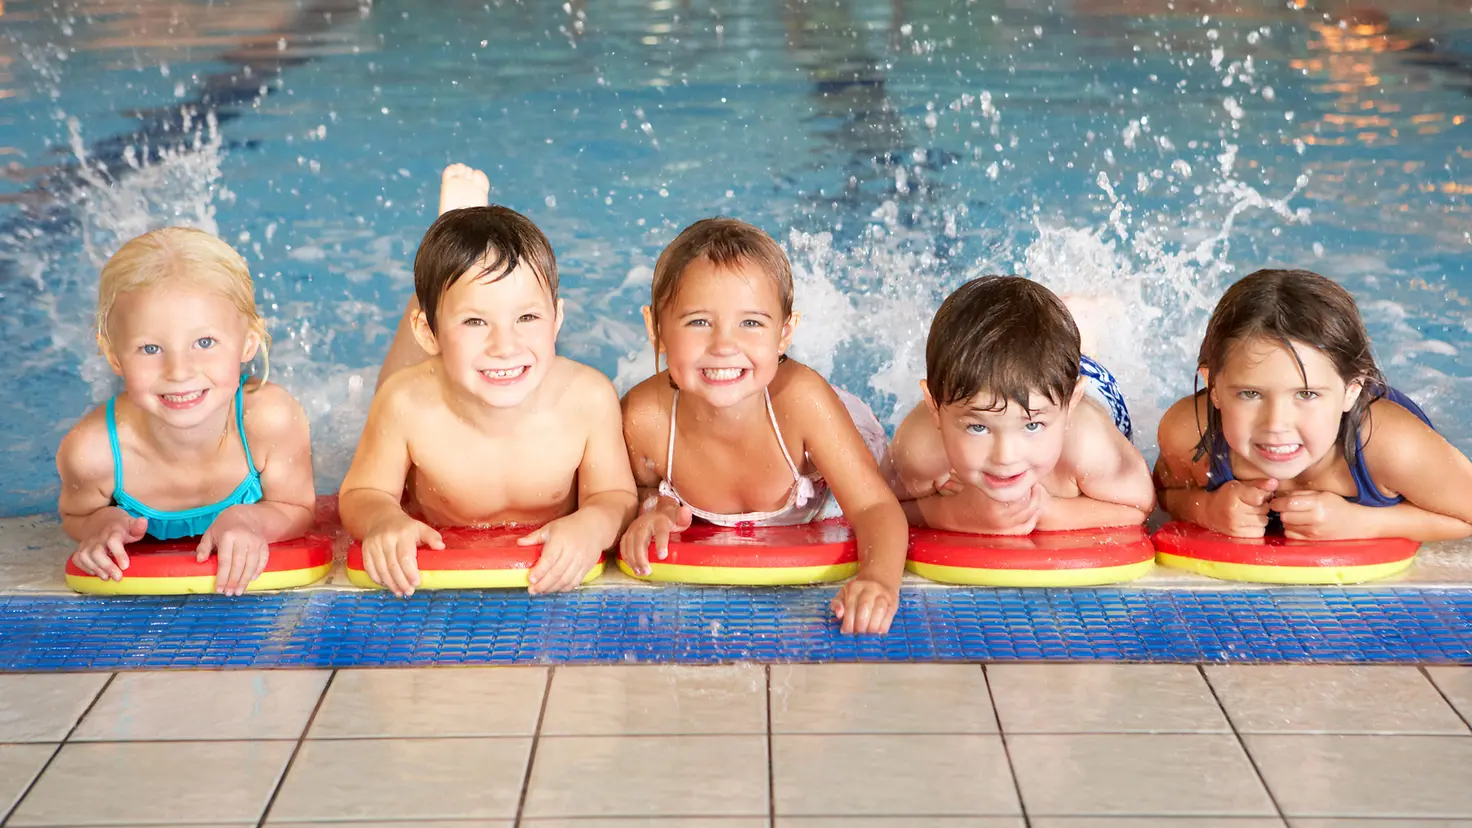 Zu sehen auf diesem Bild sind fünf Kinder, die sich am Rand eines Schwimmbeckens im Wasser aufhalten. Sie stützen sich auf ihren Schwimmhilfen ab und planschen mit dem Beinen.